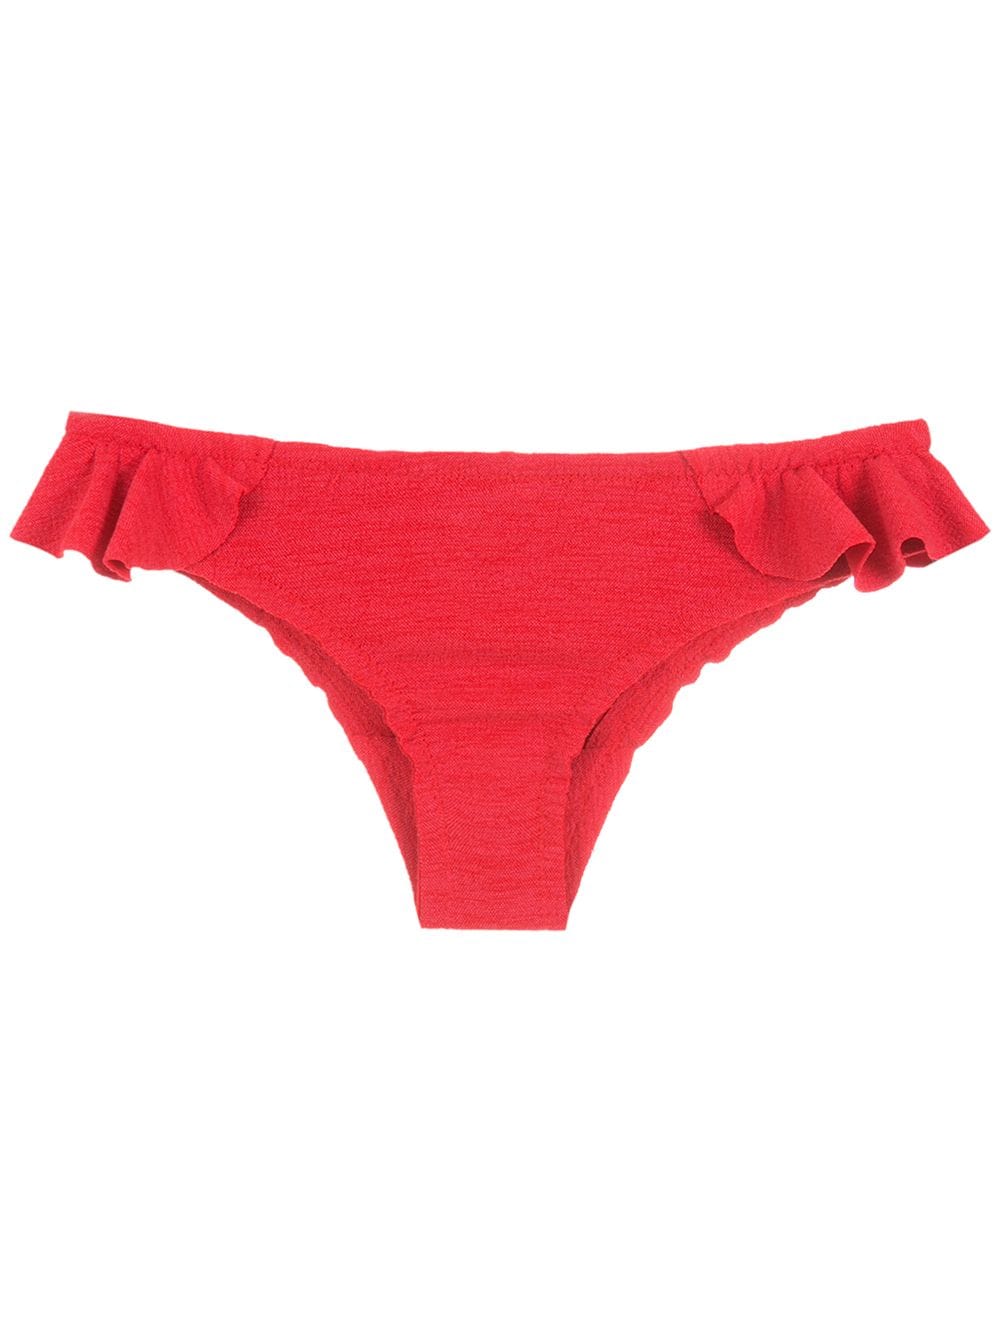 Clube Bossa Laven bikini bottom - Red von Clube Bossa